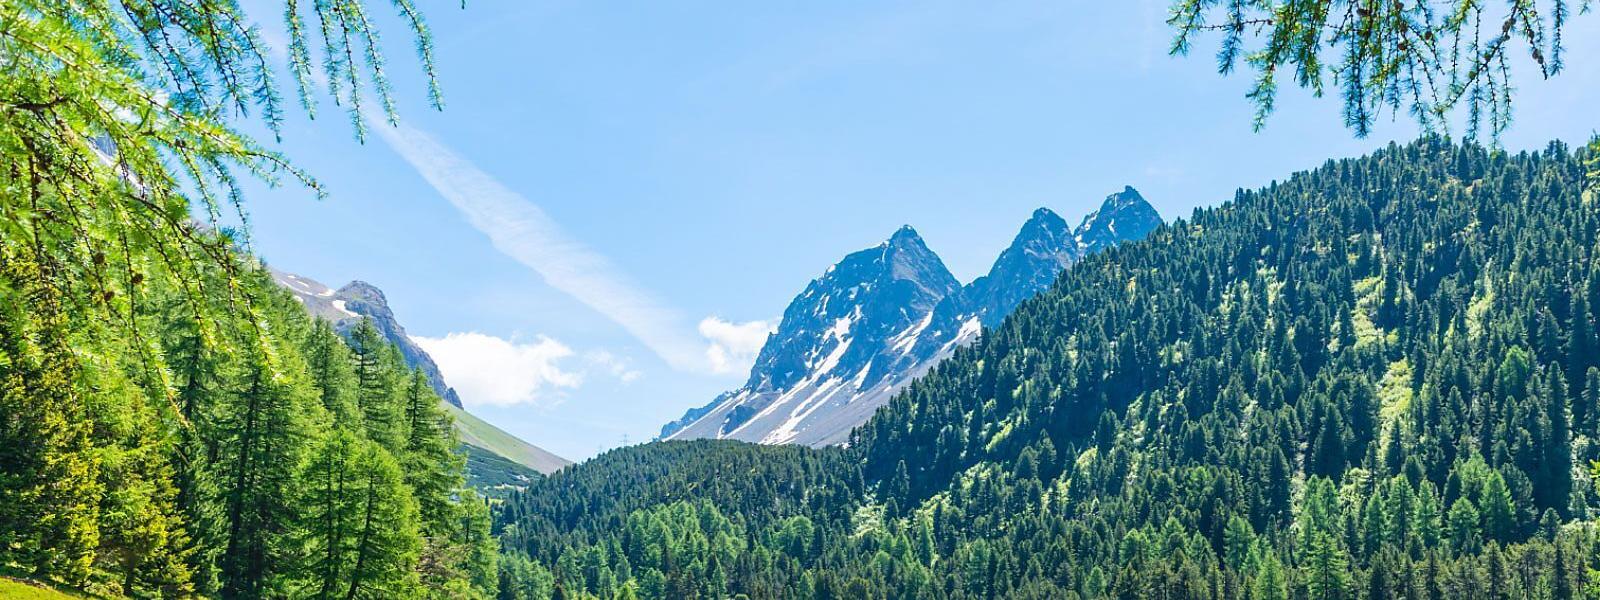 Ferienwohnungen und Ferienhäuser in Misox: Alpenidylle in Graubünden - e-domizil